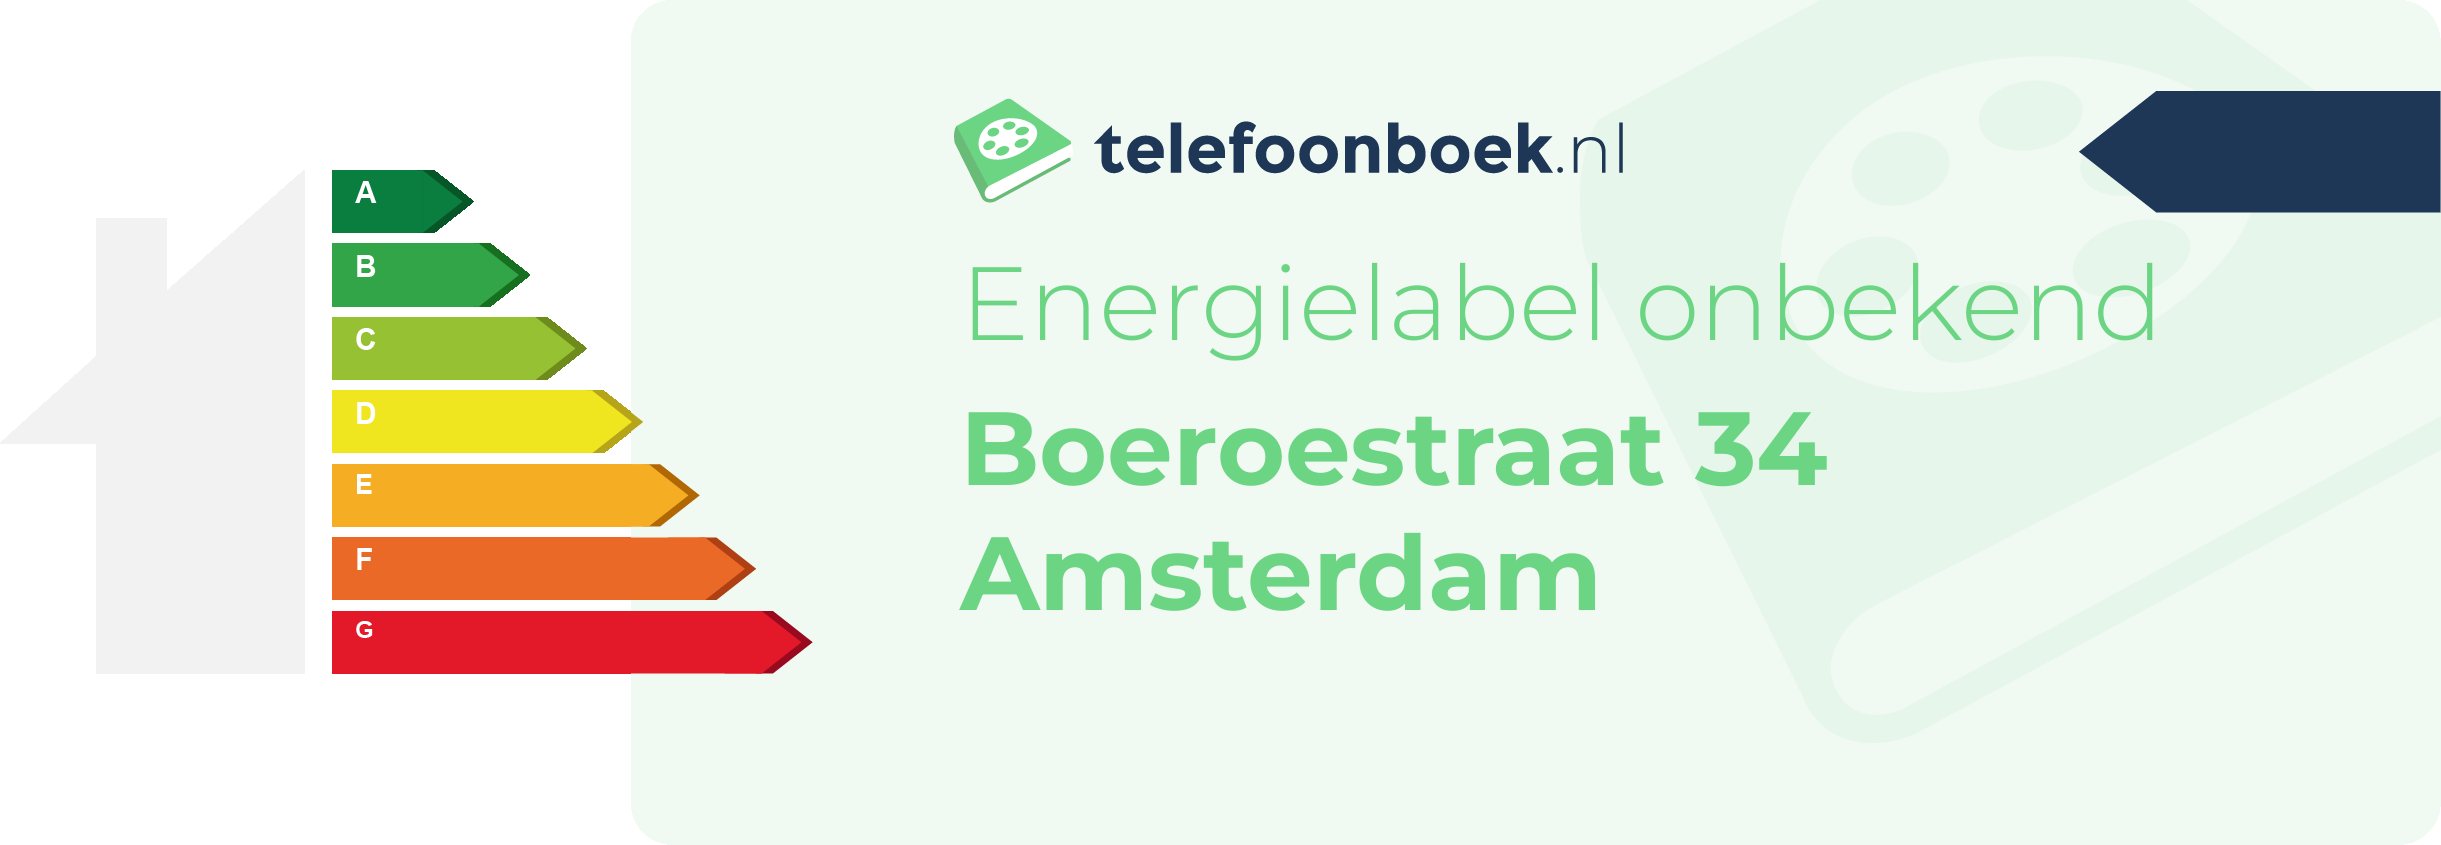 Energielabel Boeroestraat 34 Amsterdam